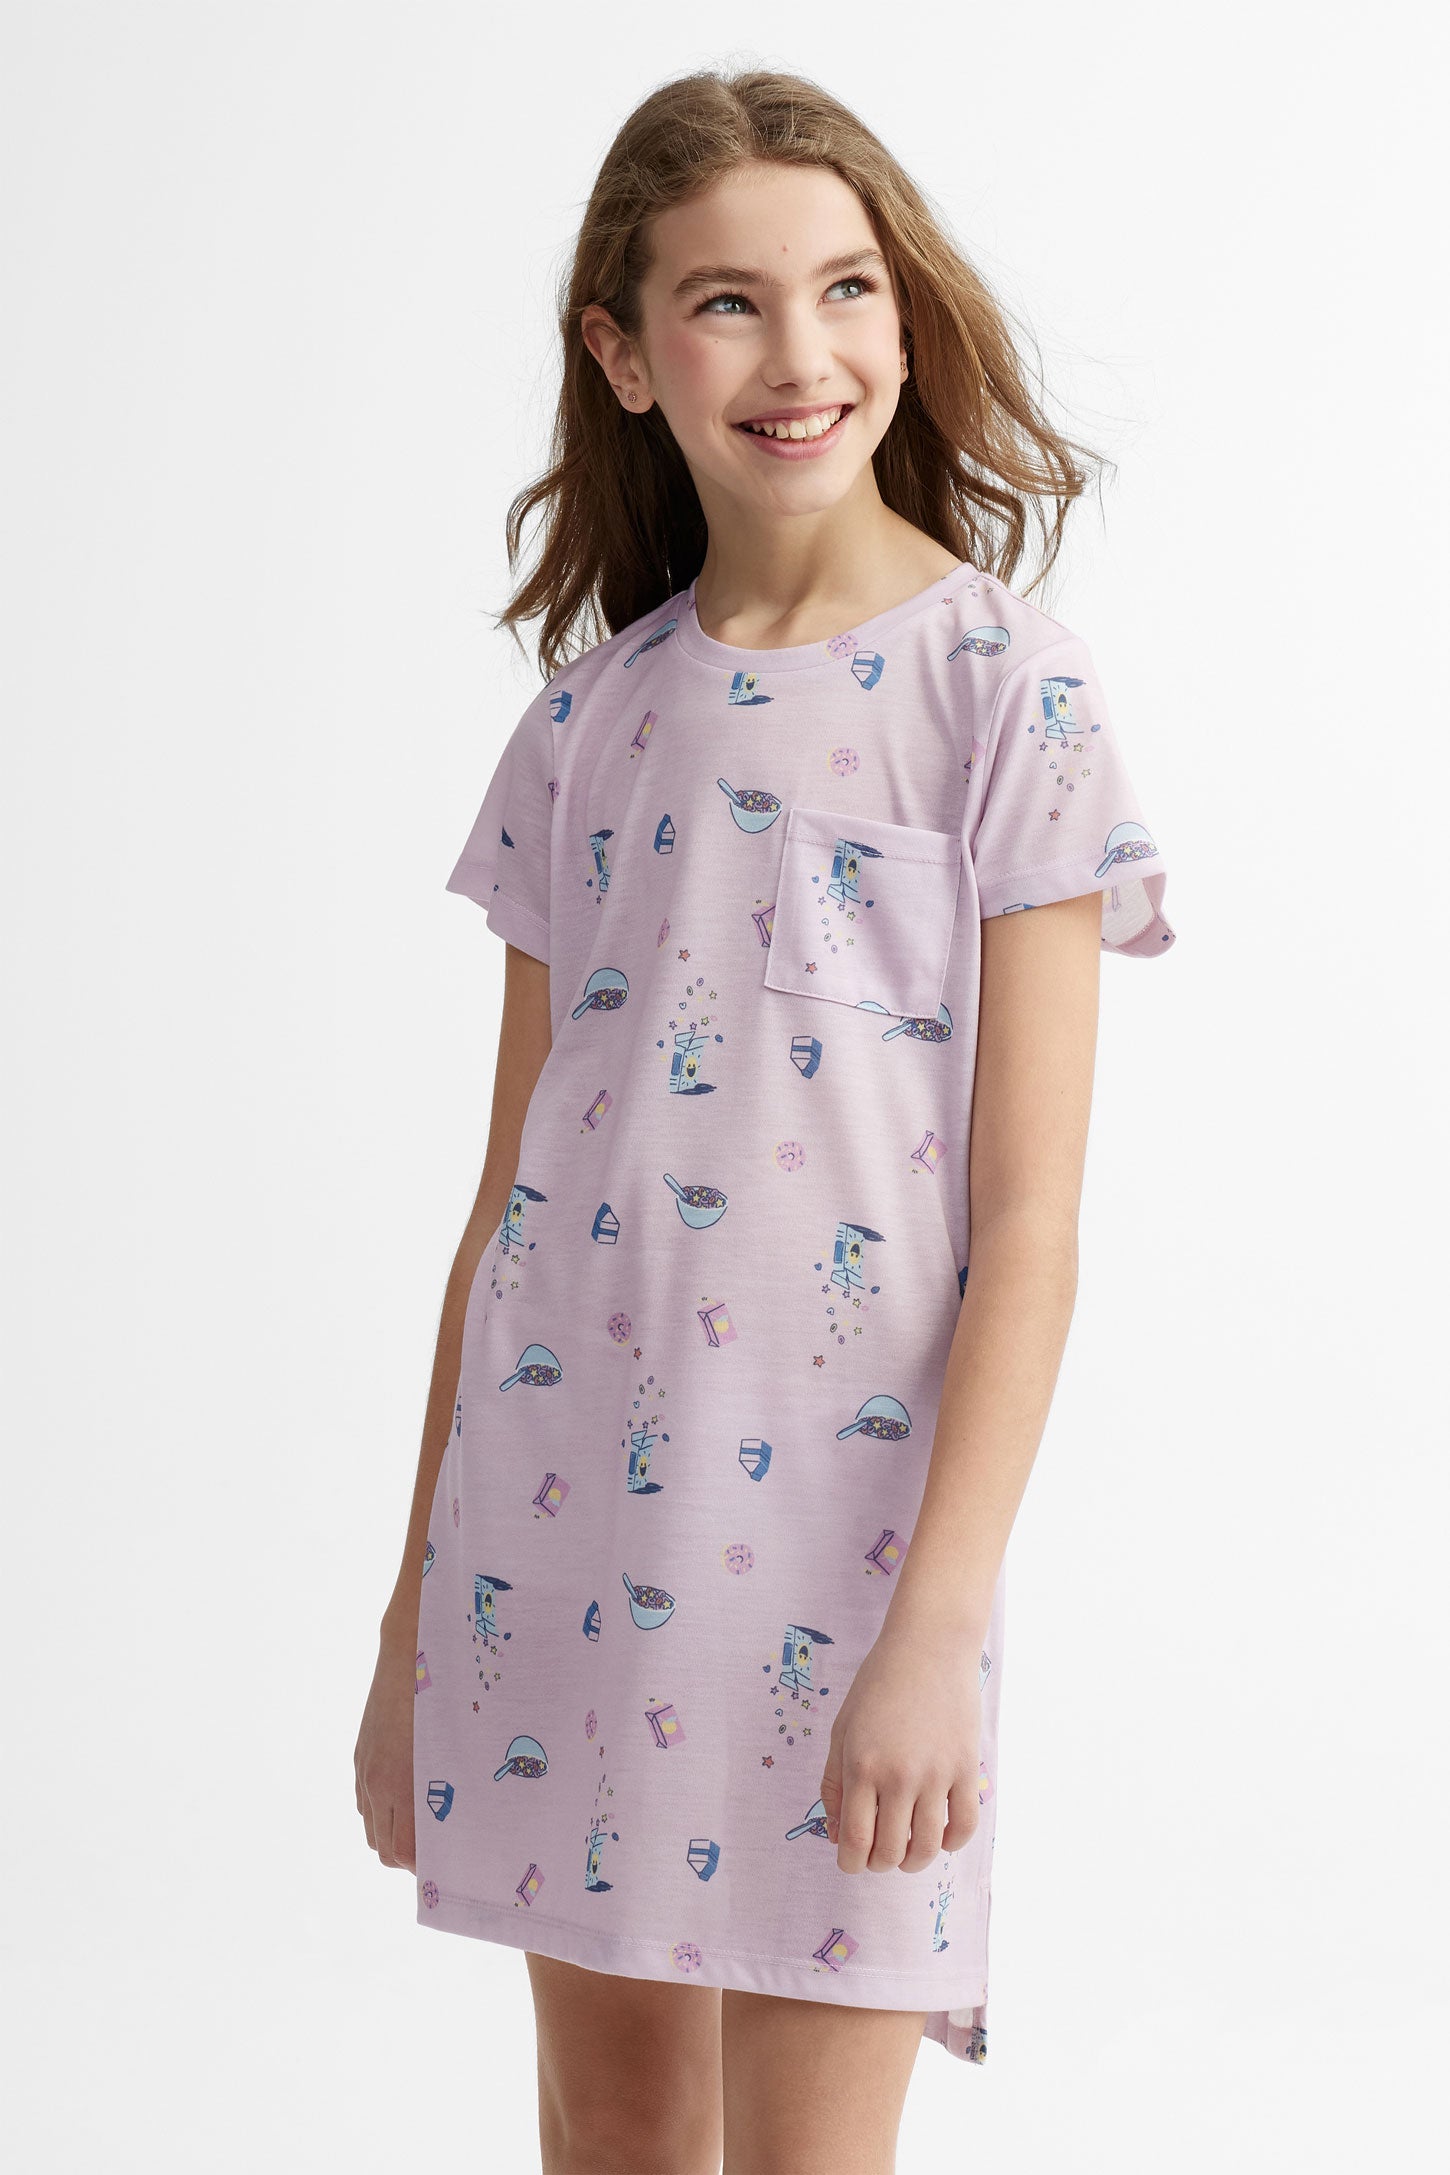 Robe de nuit pyjama assorti famille, 2/40$ - Ado fille
 && LILAS MULTI